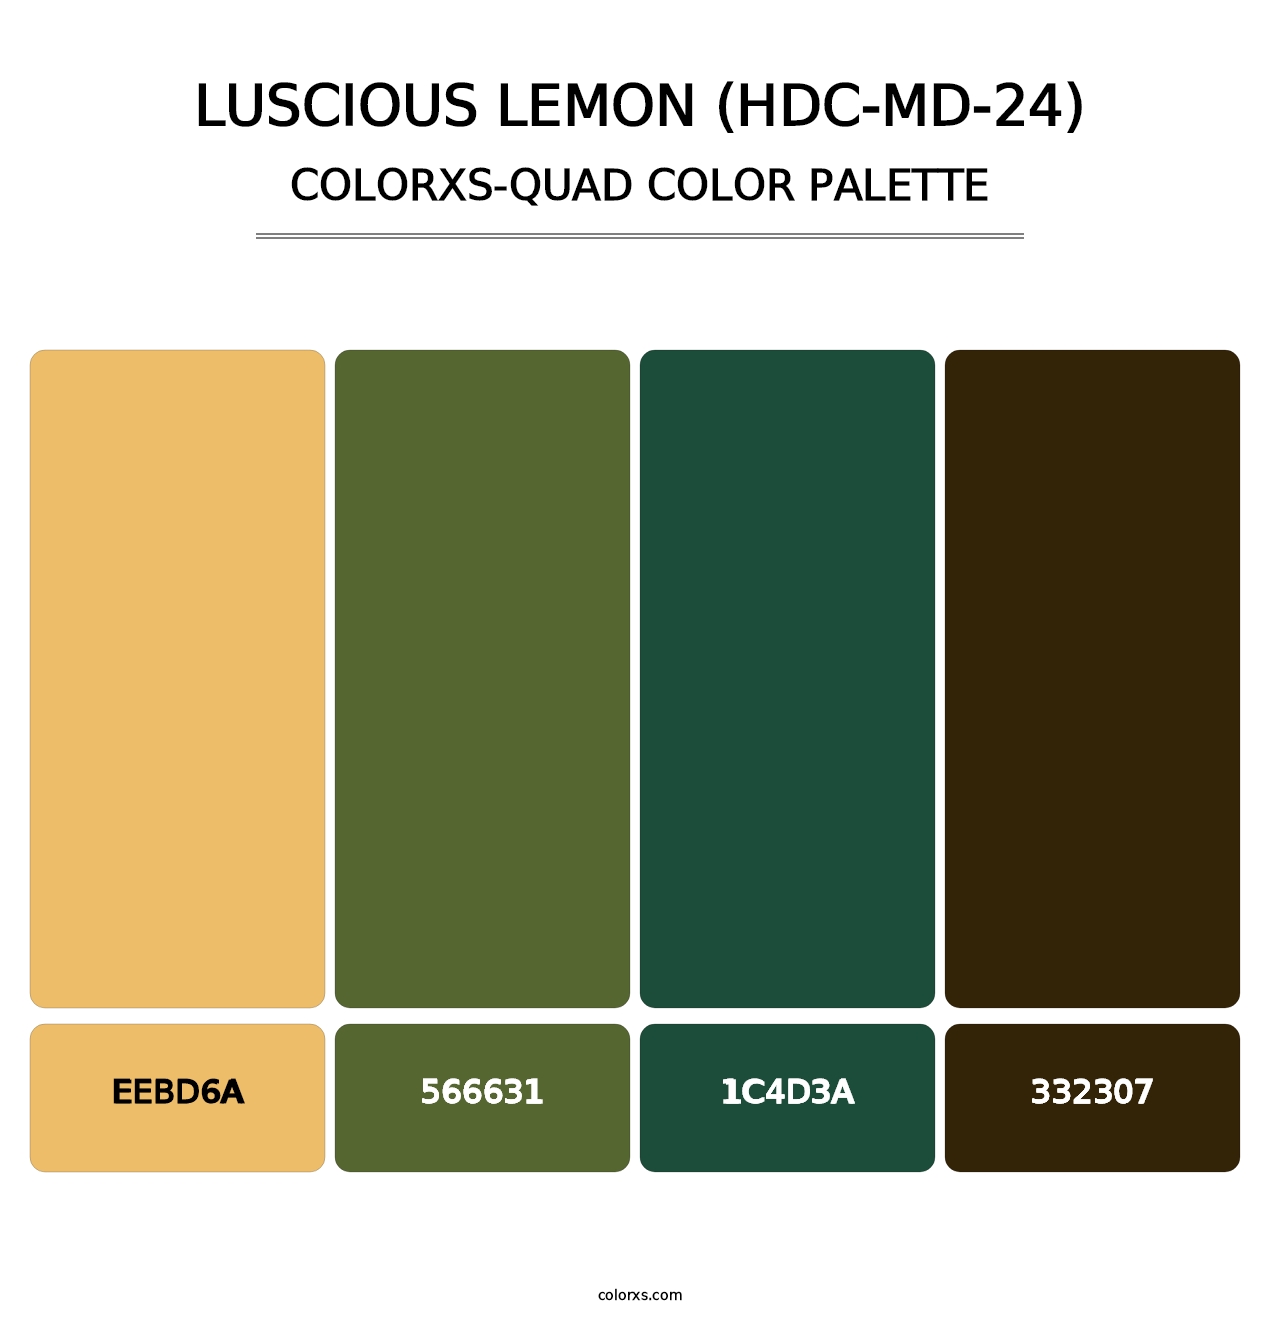 Luscious Lemon (HDC-MD-24) - Colorxs Quad Palette